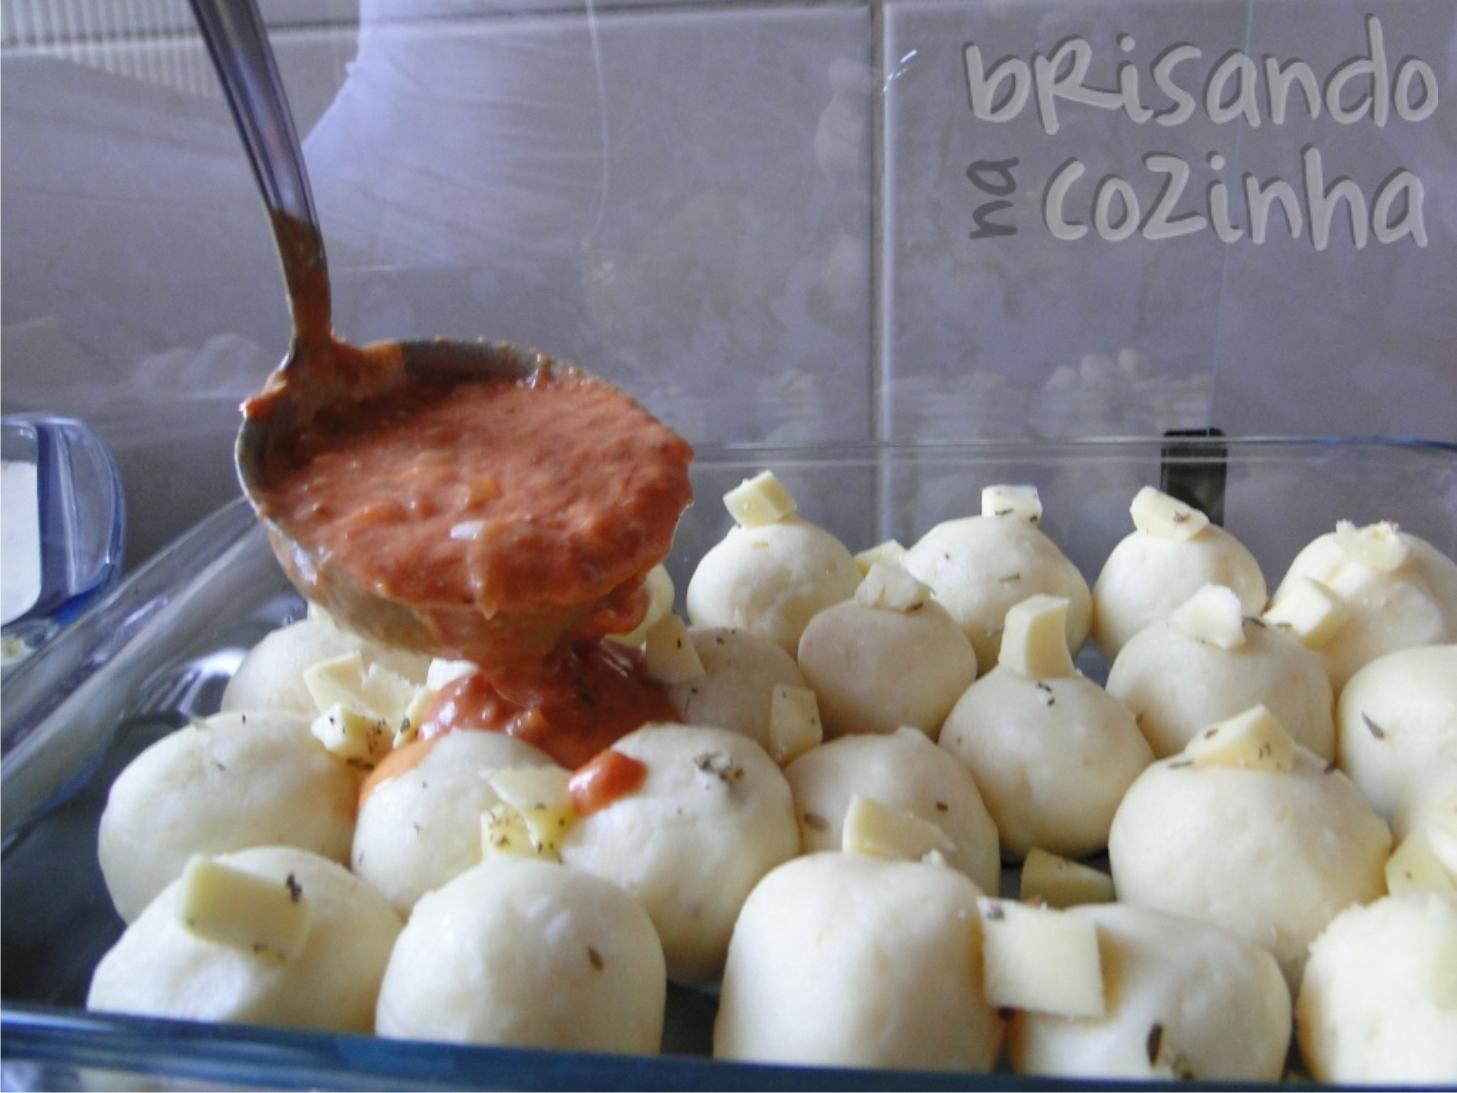 http://www.brisandonacozinha.com/2011/04/nhocao-recheado-com-queijo.html 